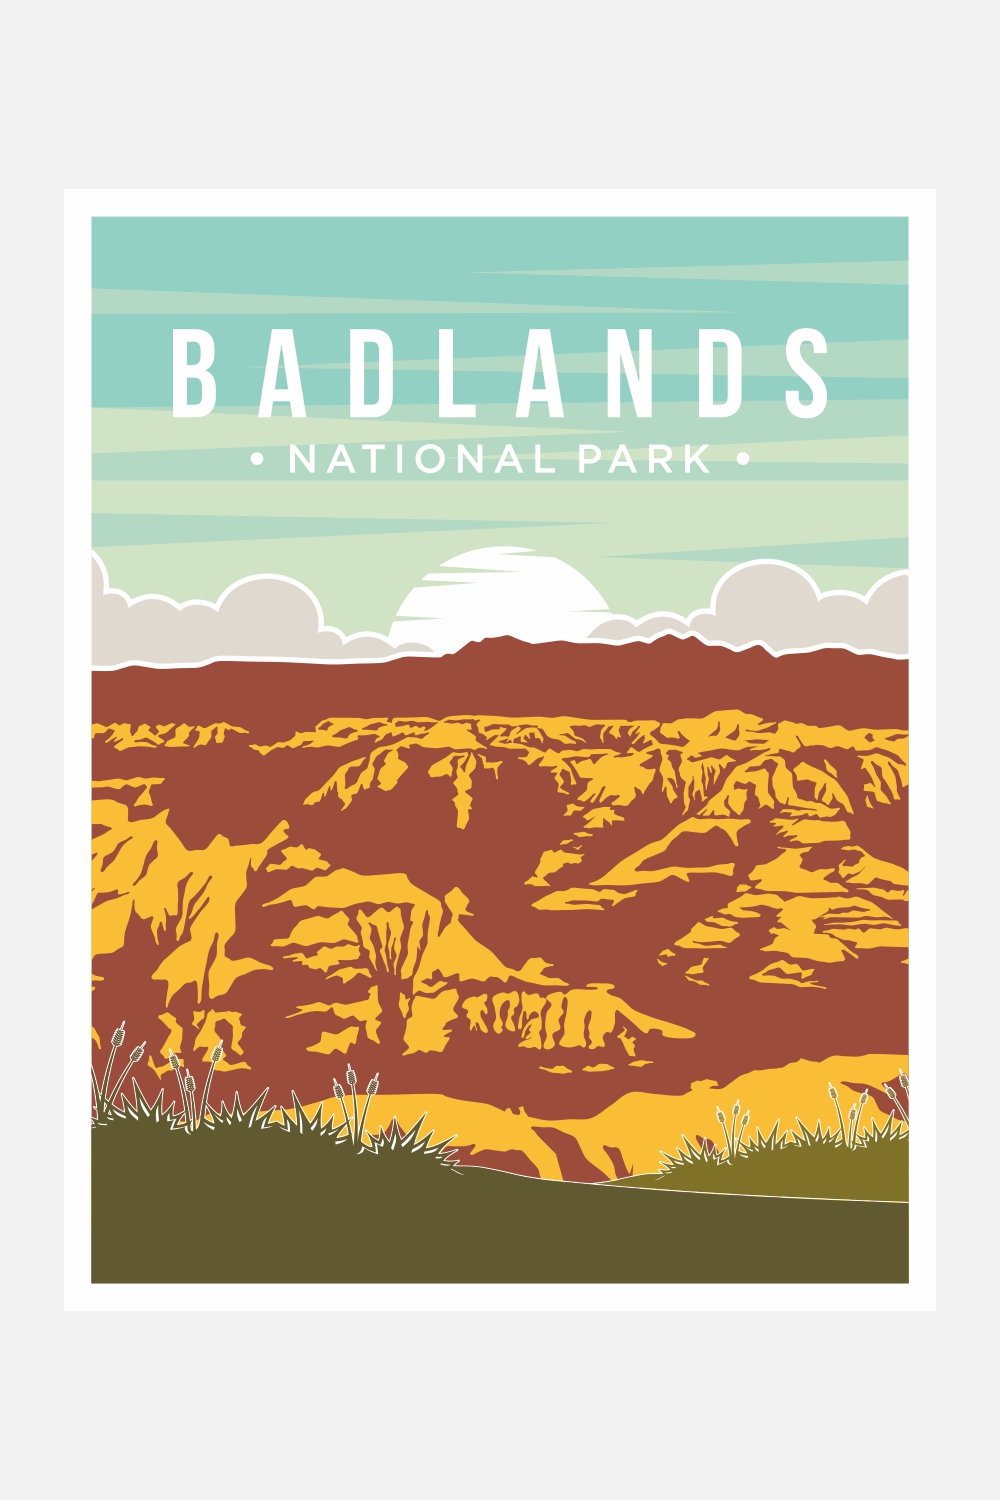 Badlands National Park poster vector illustration design - only $8 pinterest preview image.